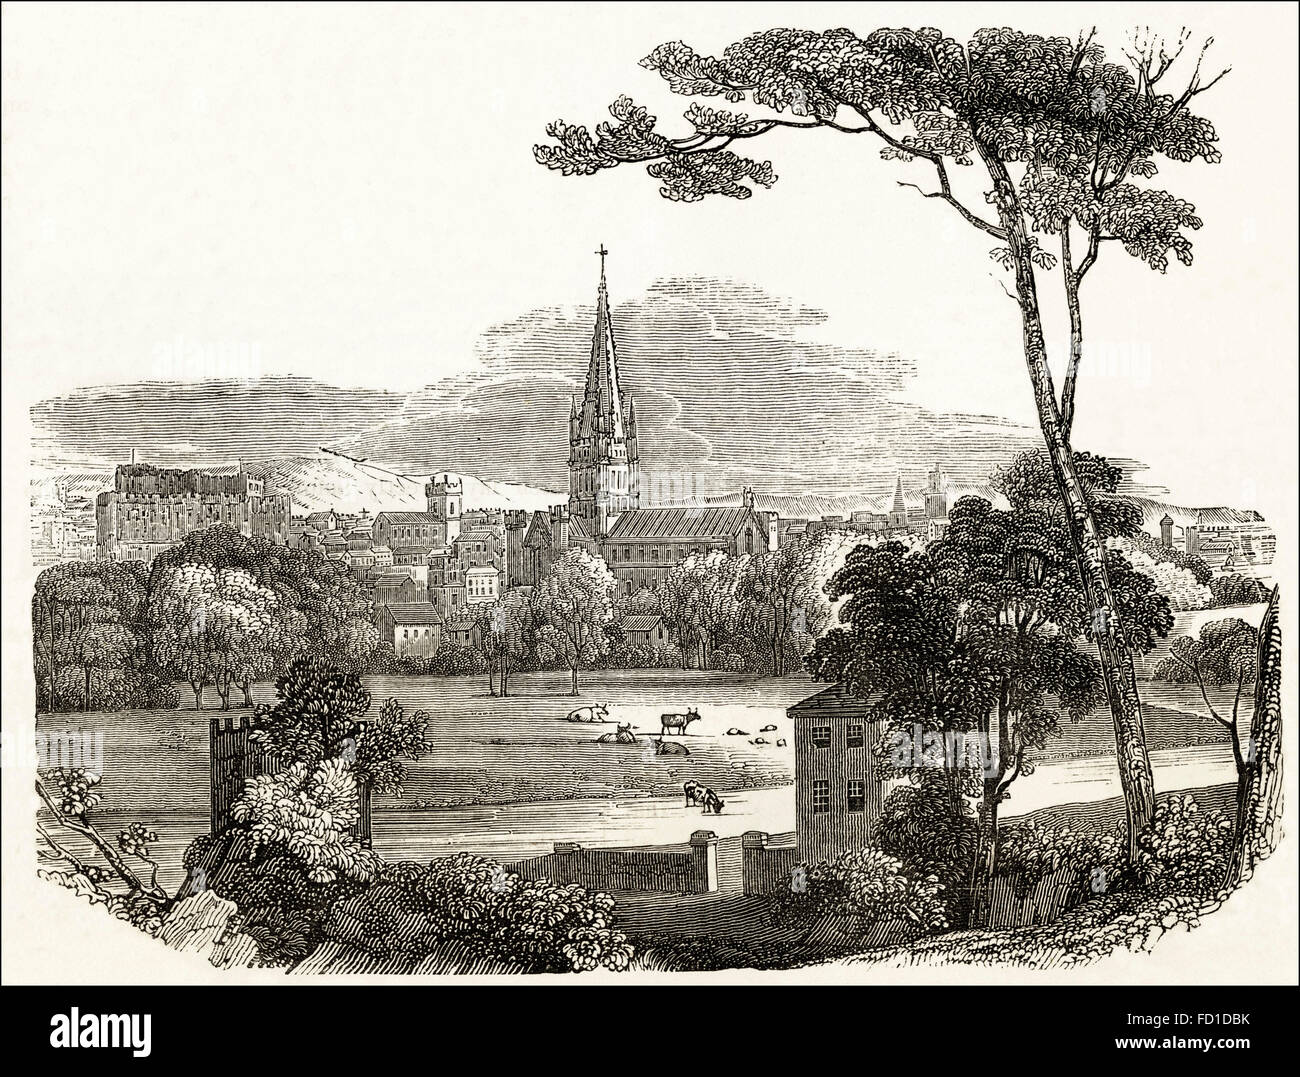 Blick über Norwich Cathedral, die 1096 gestartet wurde. Viktorianischen Holzschnitt, Kupferstich, ca. 1845. Stockfoto